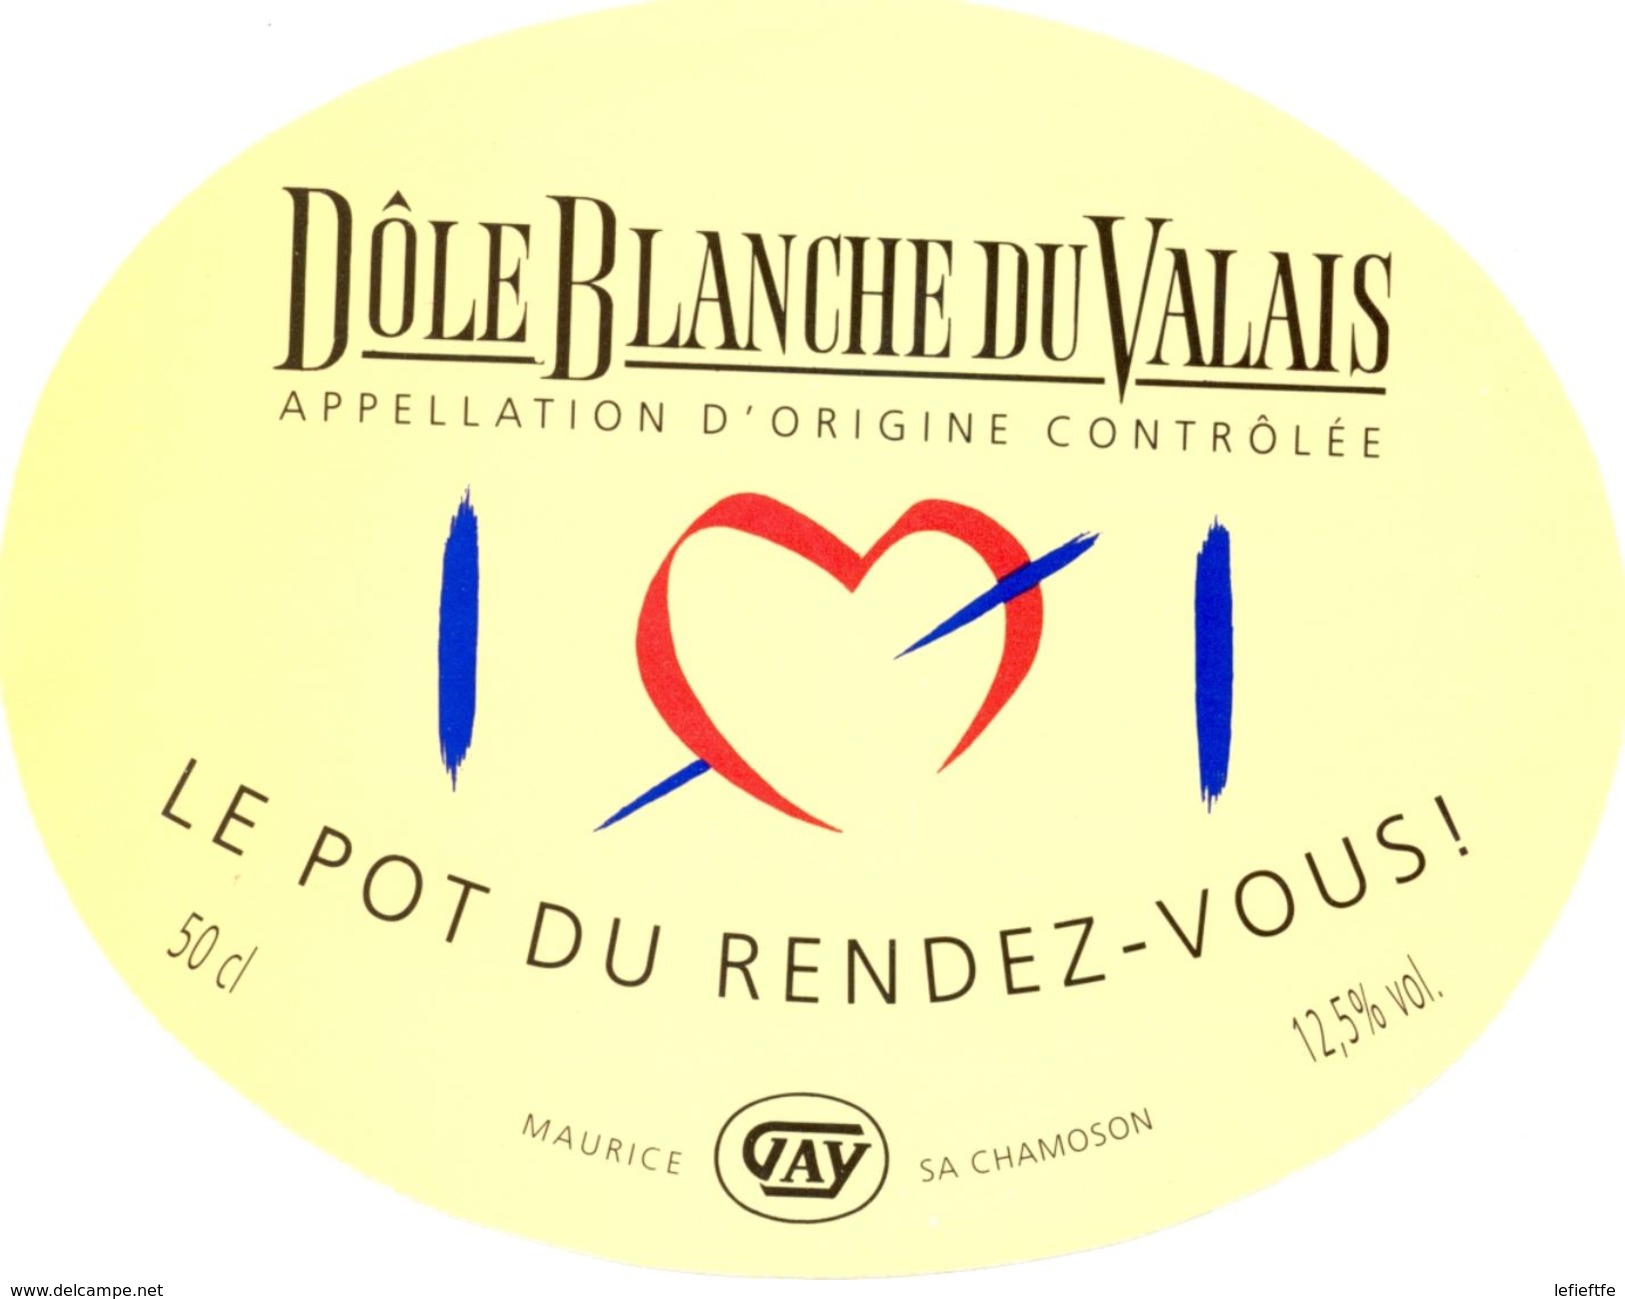 1509 - Suisse - Le Pot Du Rendez-Vous - Dôle Blanche Du Valais - A.O.C.  Maurice Gay - Chamoson - Blancs